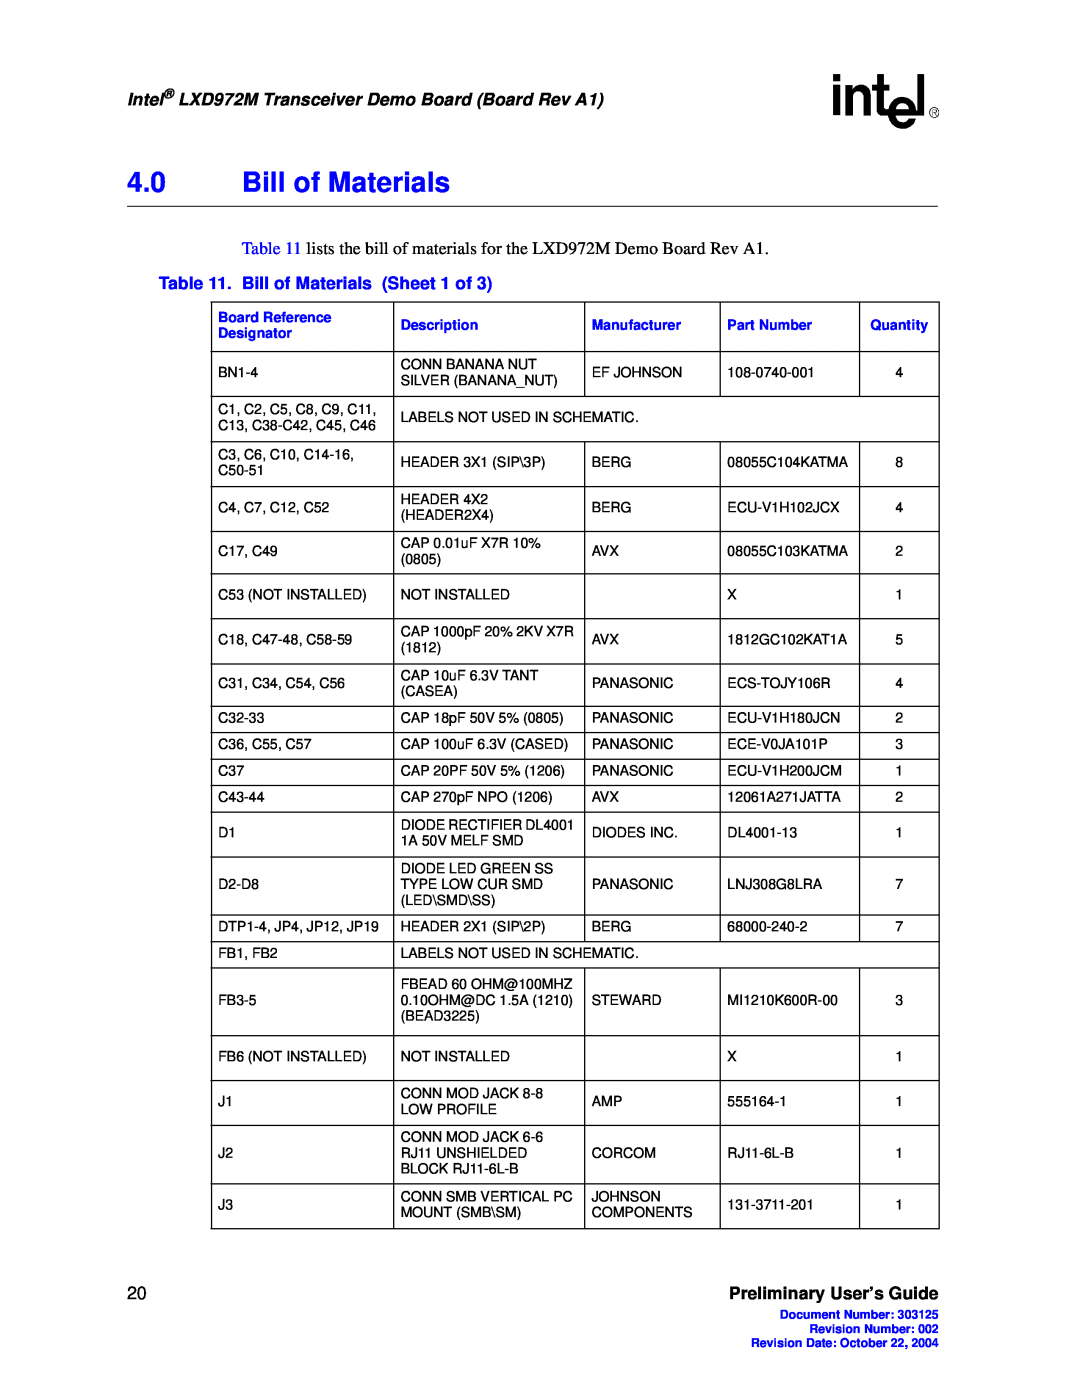 Intel 4.0Bill of Materials, Intel LXD972M Transceiver Demo Board Board Rev A1, Preliminary User’s Guide, Description 